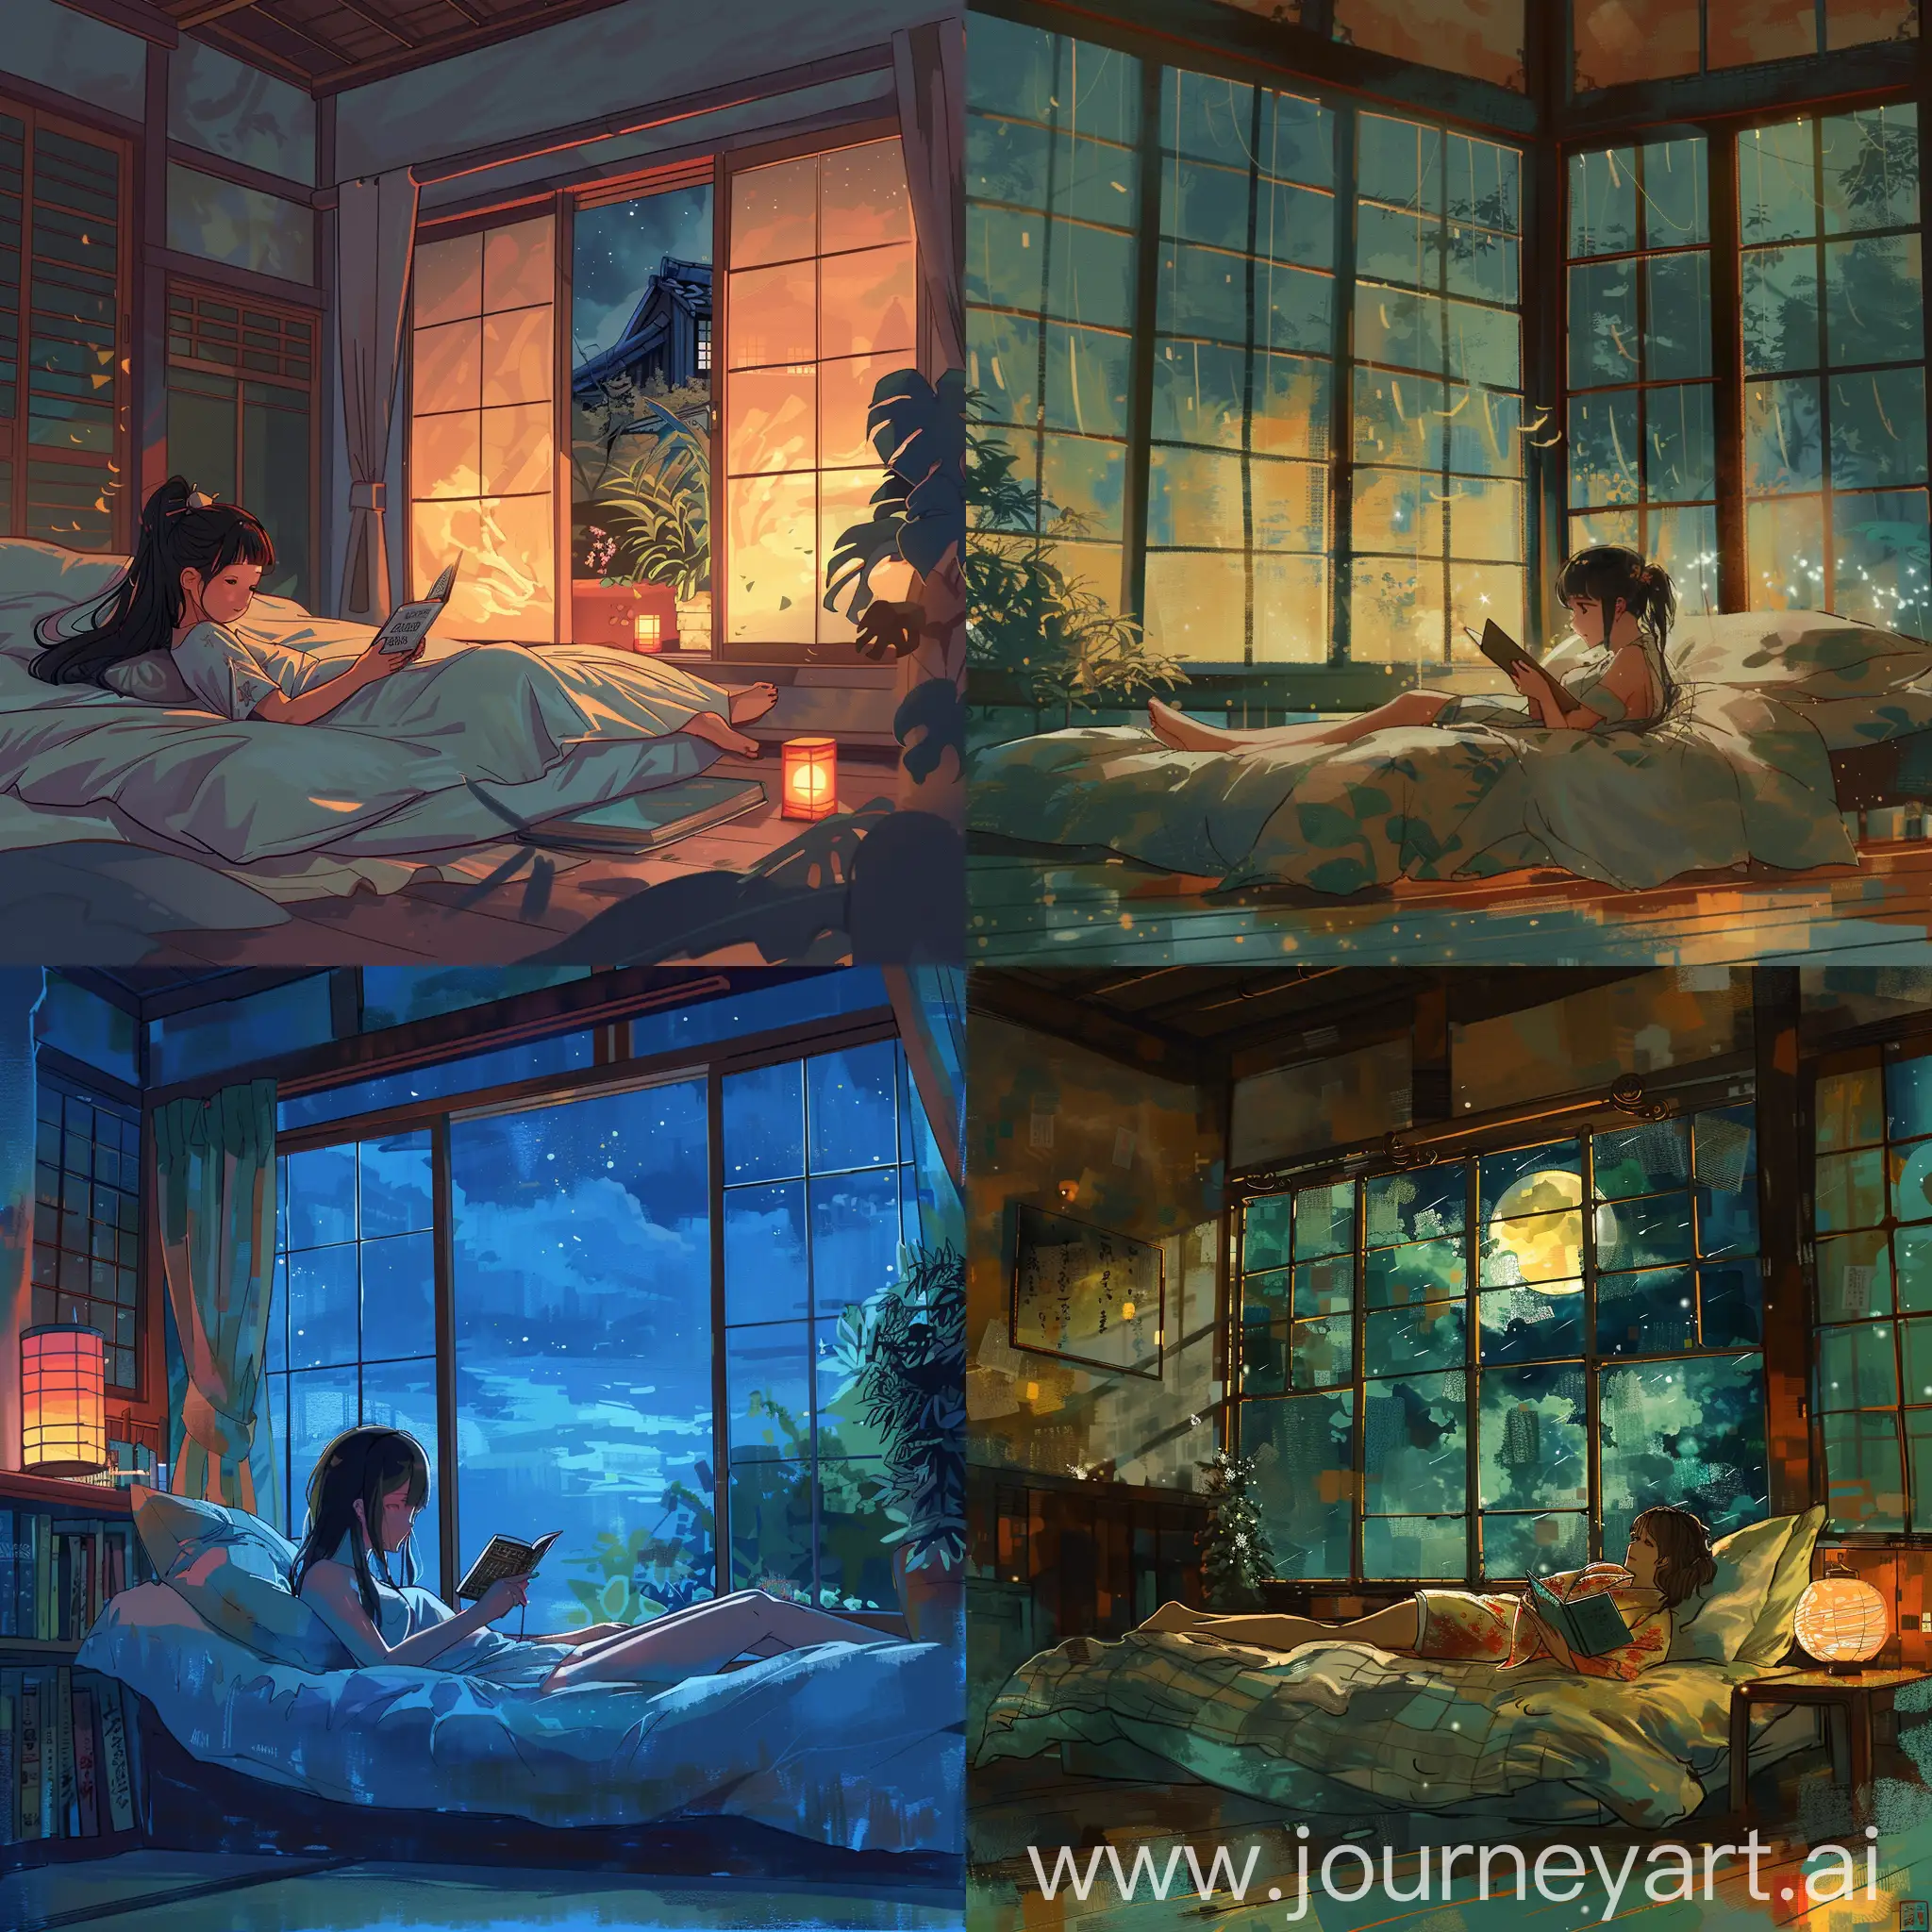 一个女孩躺在床上看书，床边有一个大窗，时间是晚上，风格是浪漫日系的，色彩要多彩些，